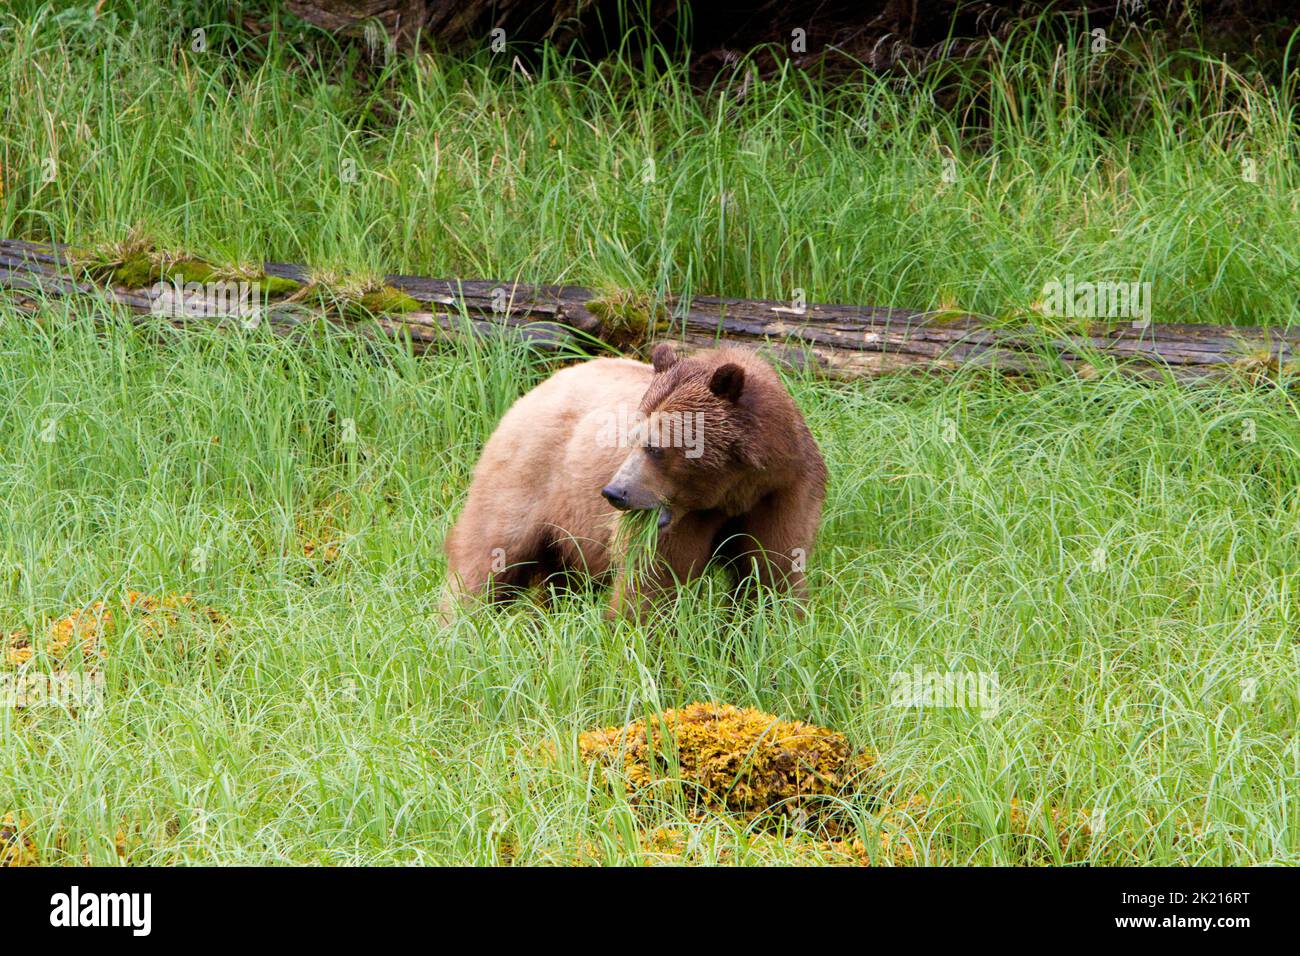 Grizzly Bear (Ursus arctos horribilis) si nutre di erba lungo le rive del Khutzeymateen insenatura a nord del Principe Rupert, BC, Canada nel mese di luglio Foto Stock